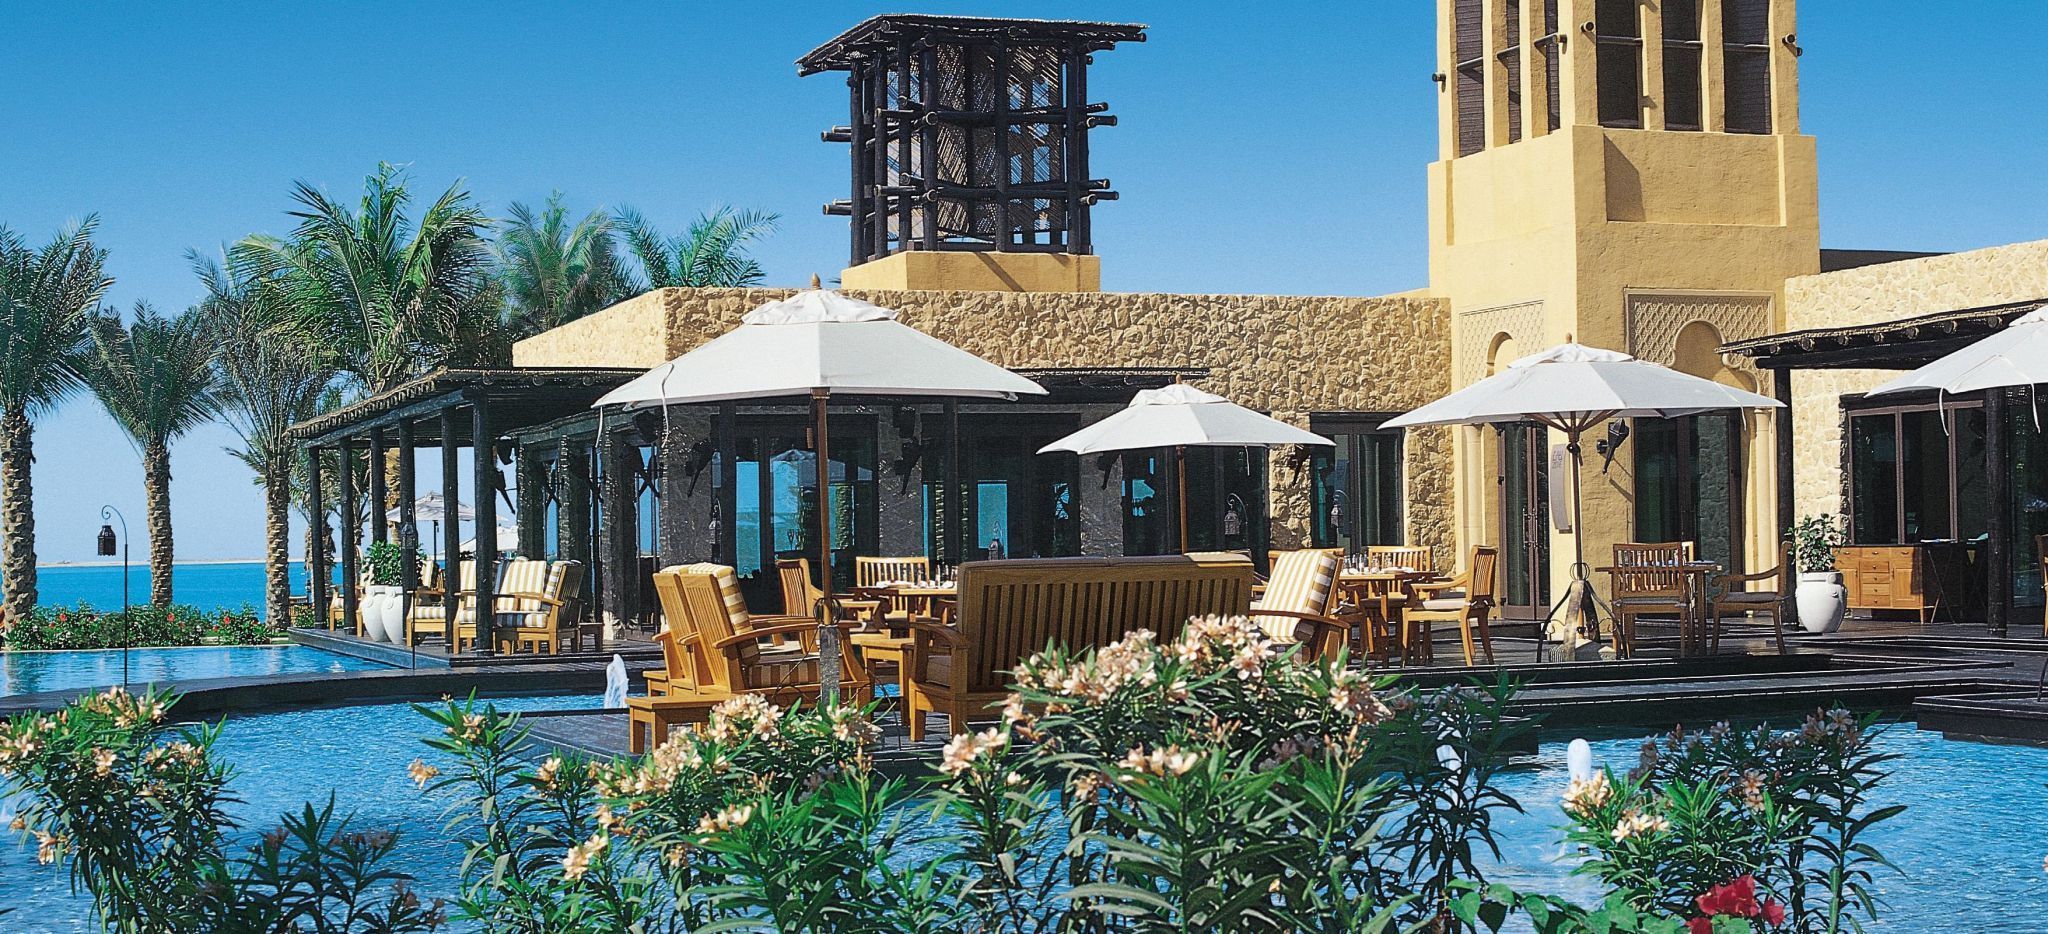 Pool mit Hauptrestaurant im Hotel "One&Only Royal Mirage", Palmen und Meer im Hintergrund